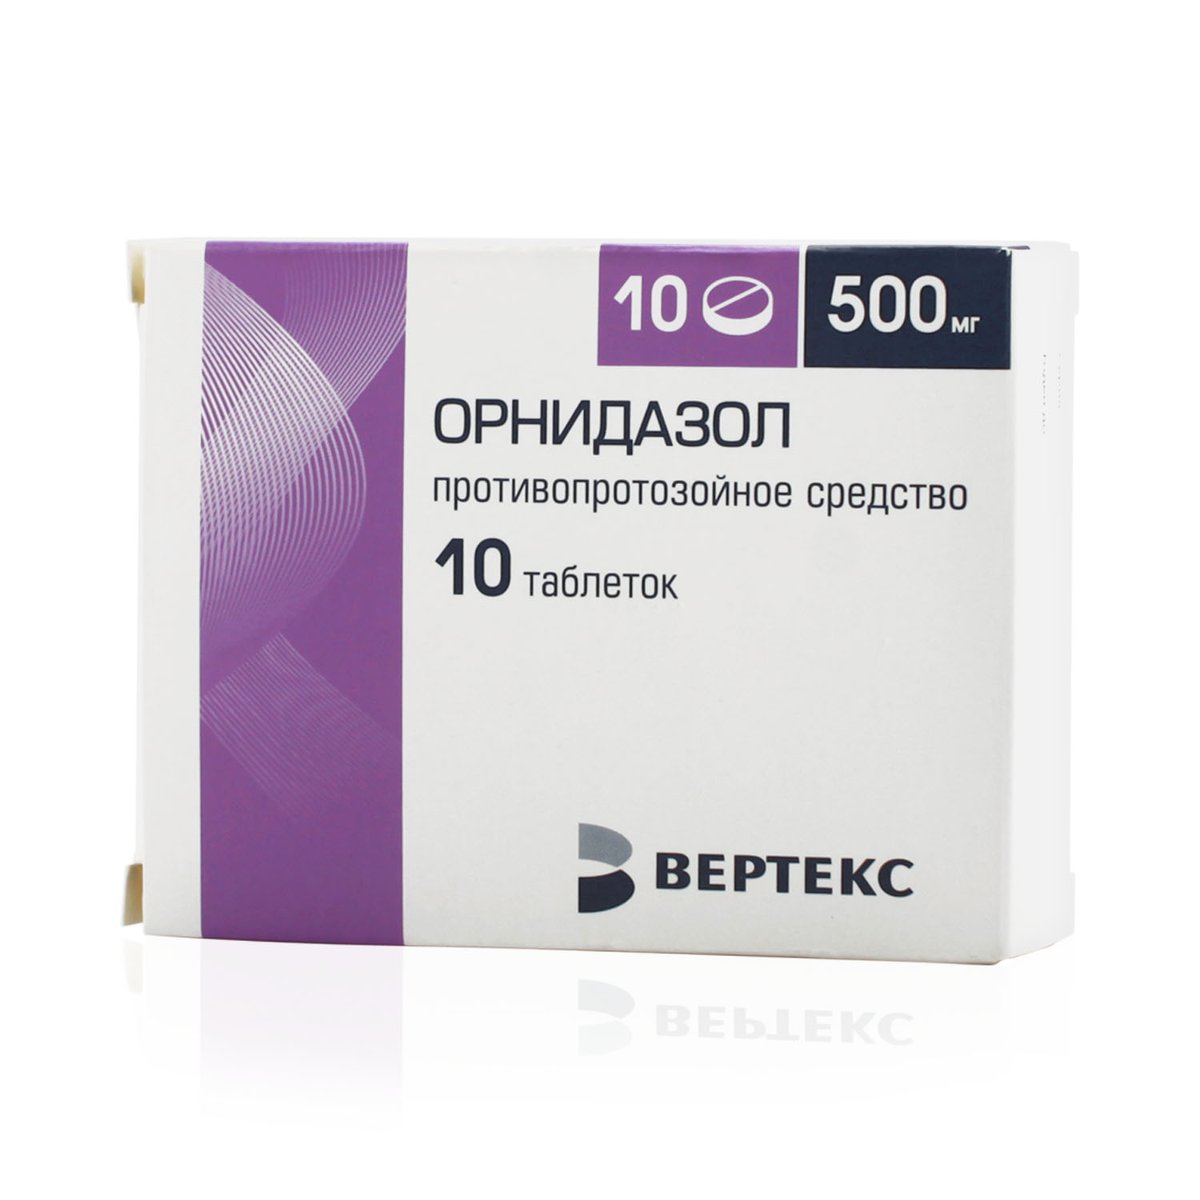 Орнидазол Вертекс (таблетки, 10 шт, 500 мг) - цена,  онлайн в .